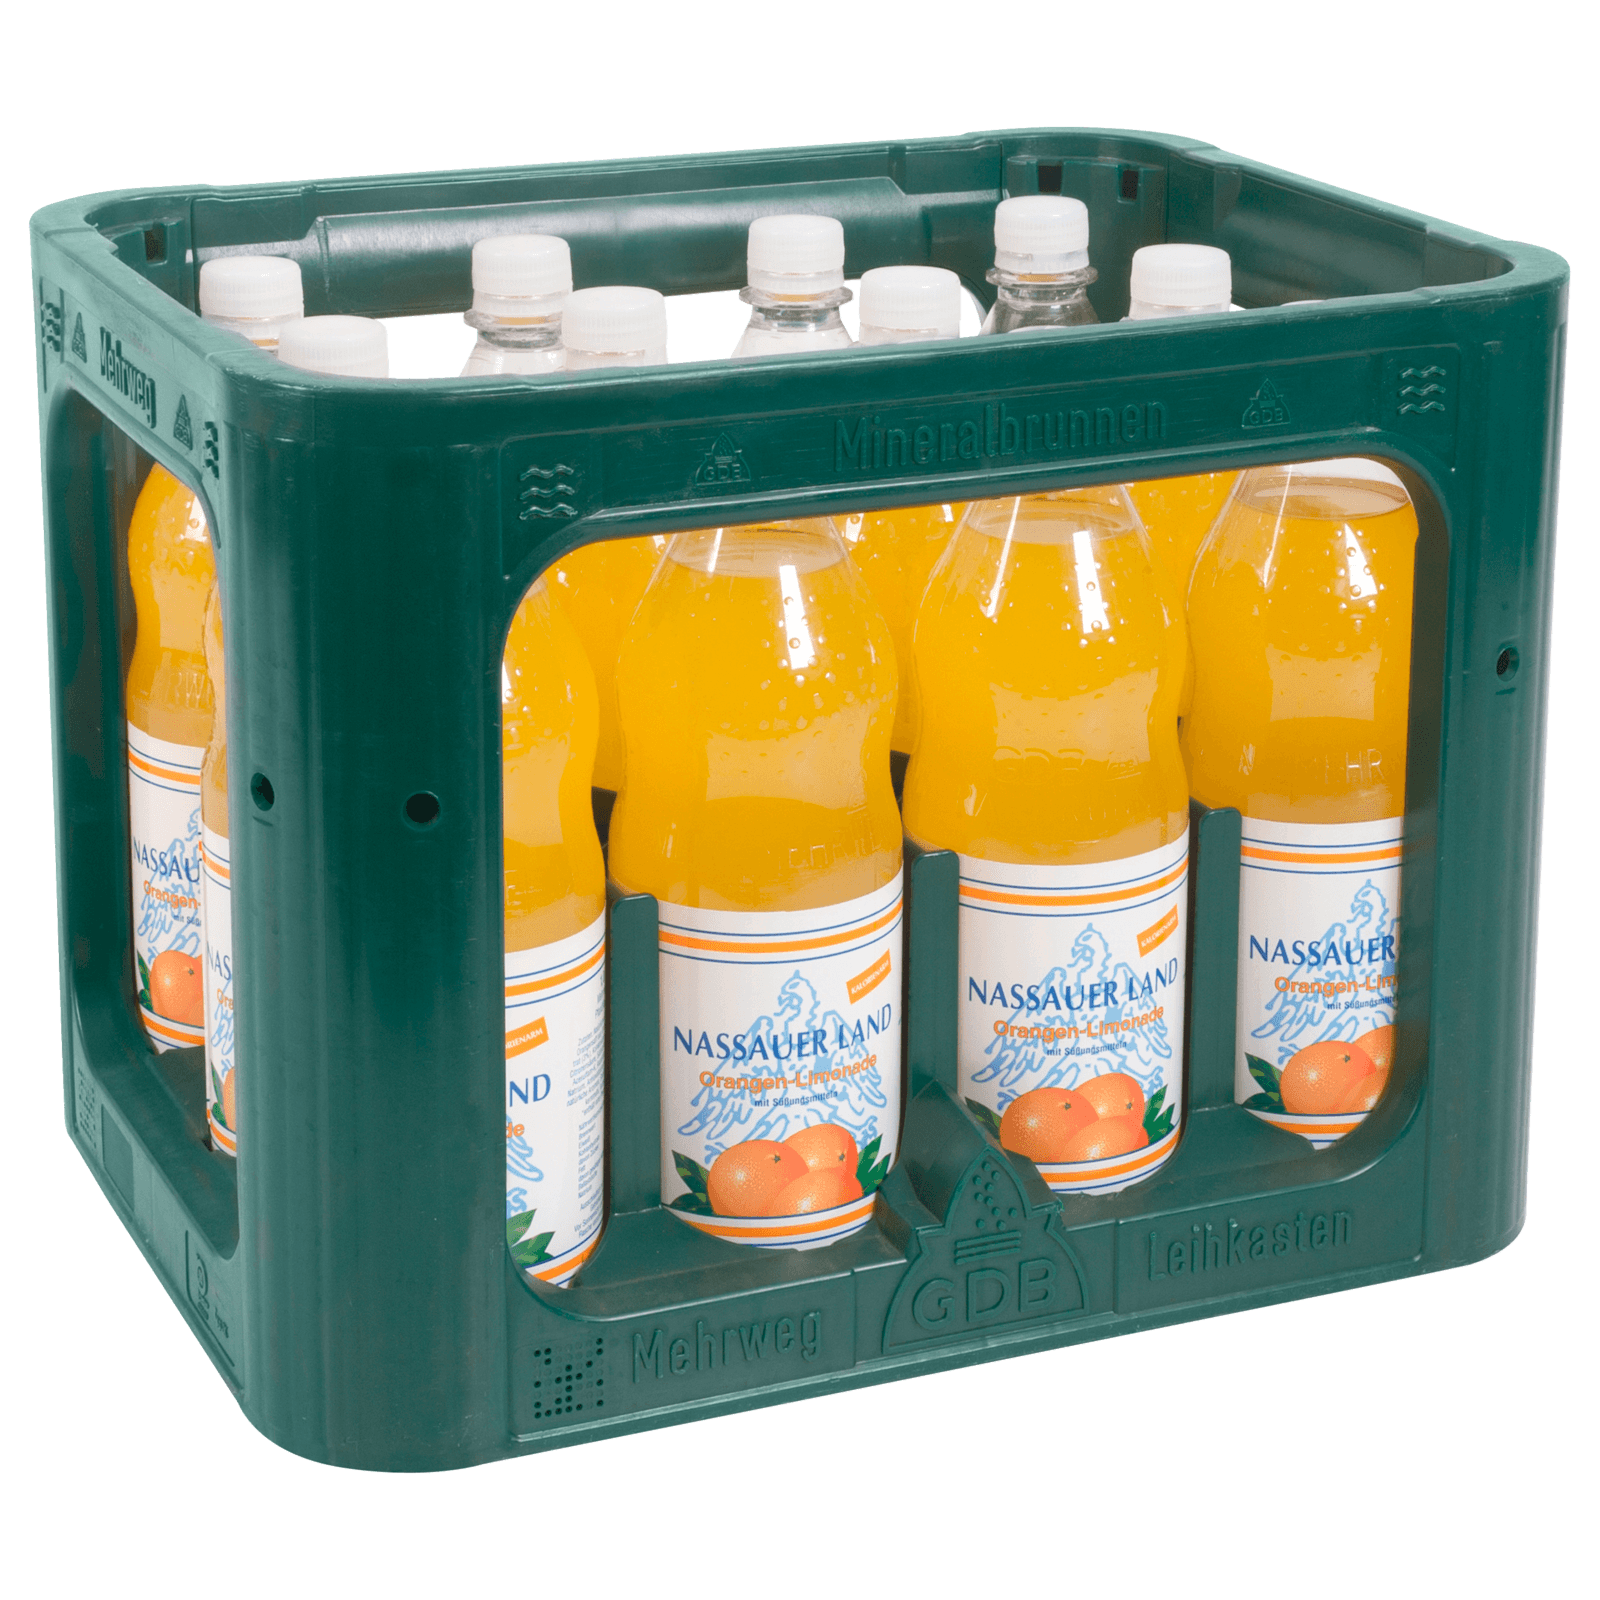 Nassauer Land Orangen-Limonade 12x1l  für 7.49 EUR